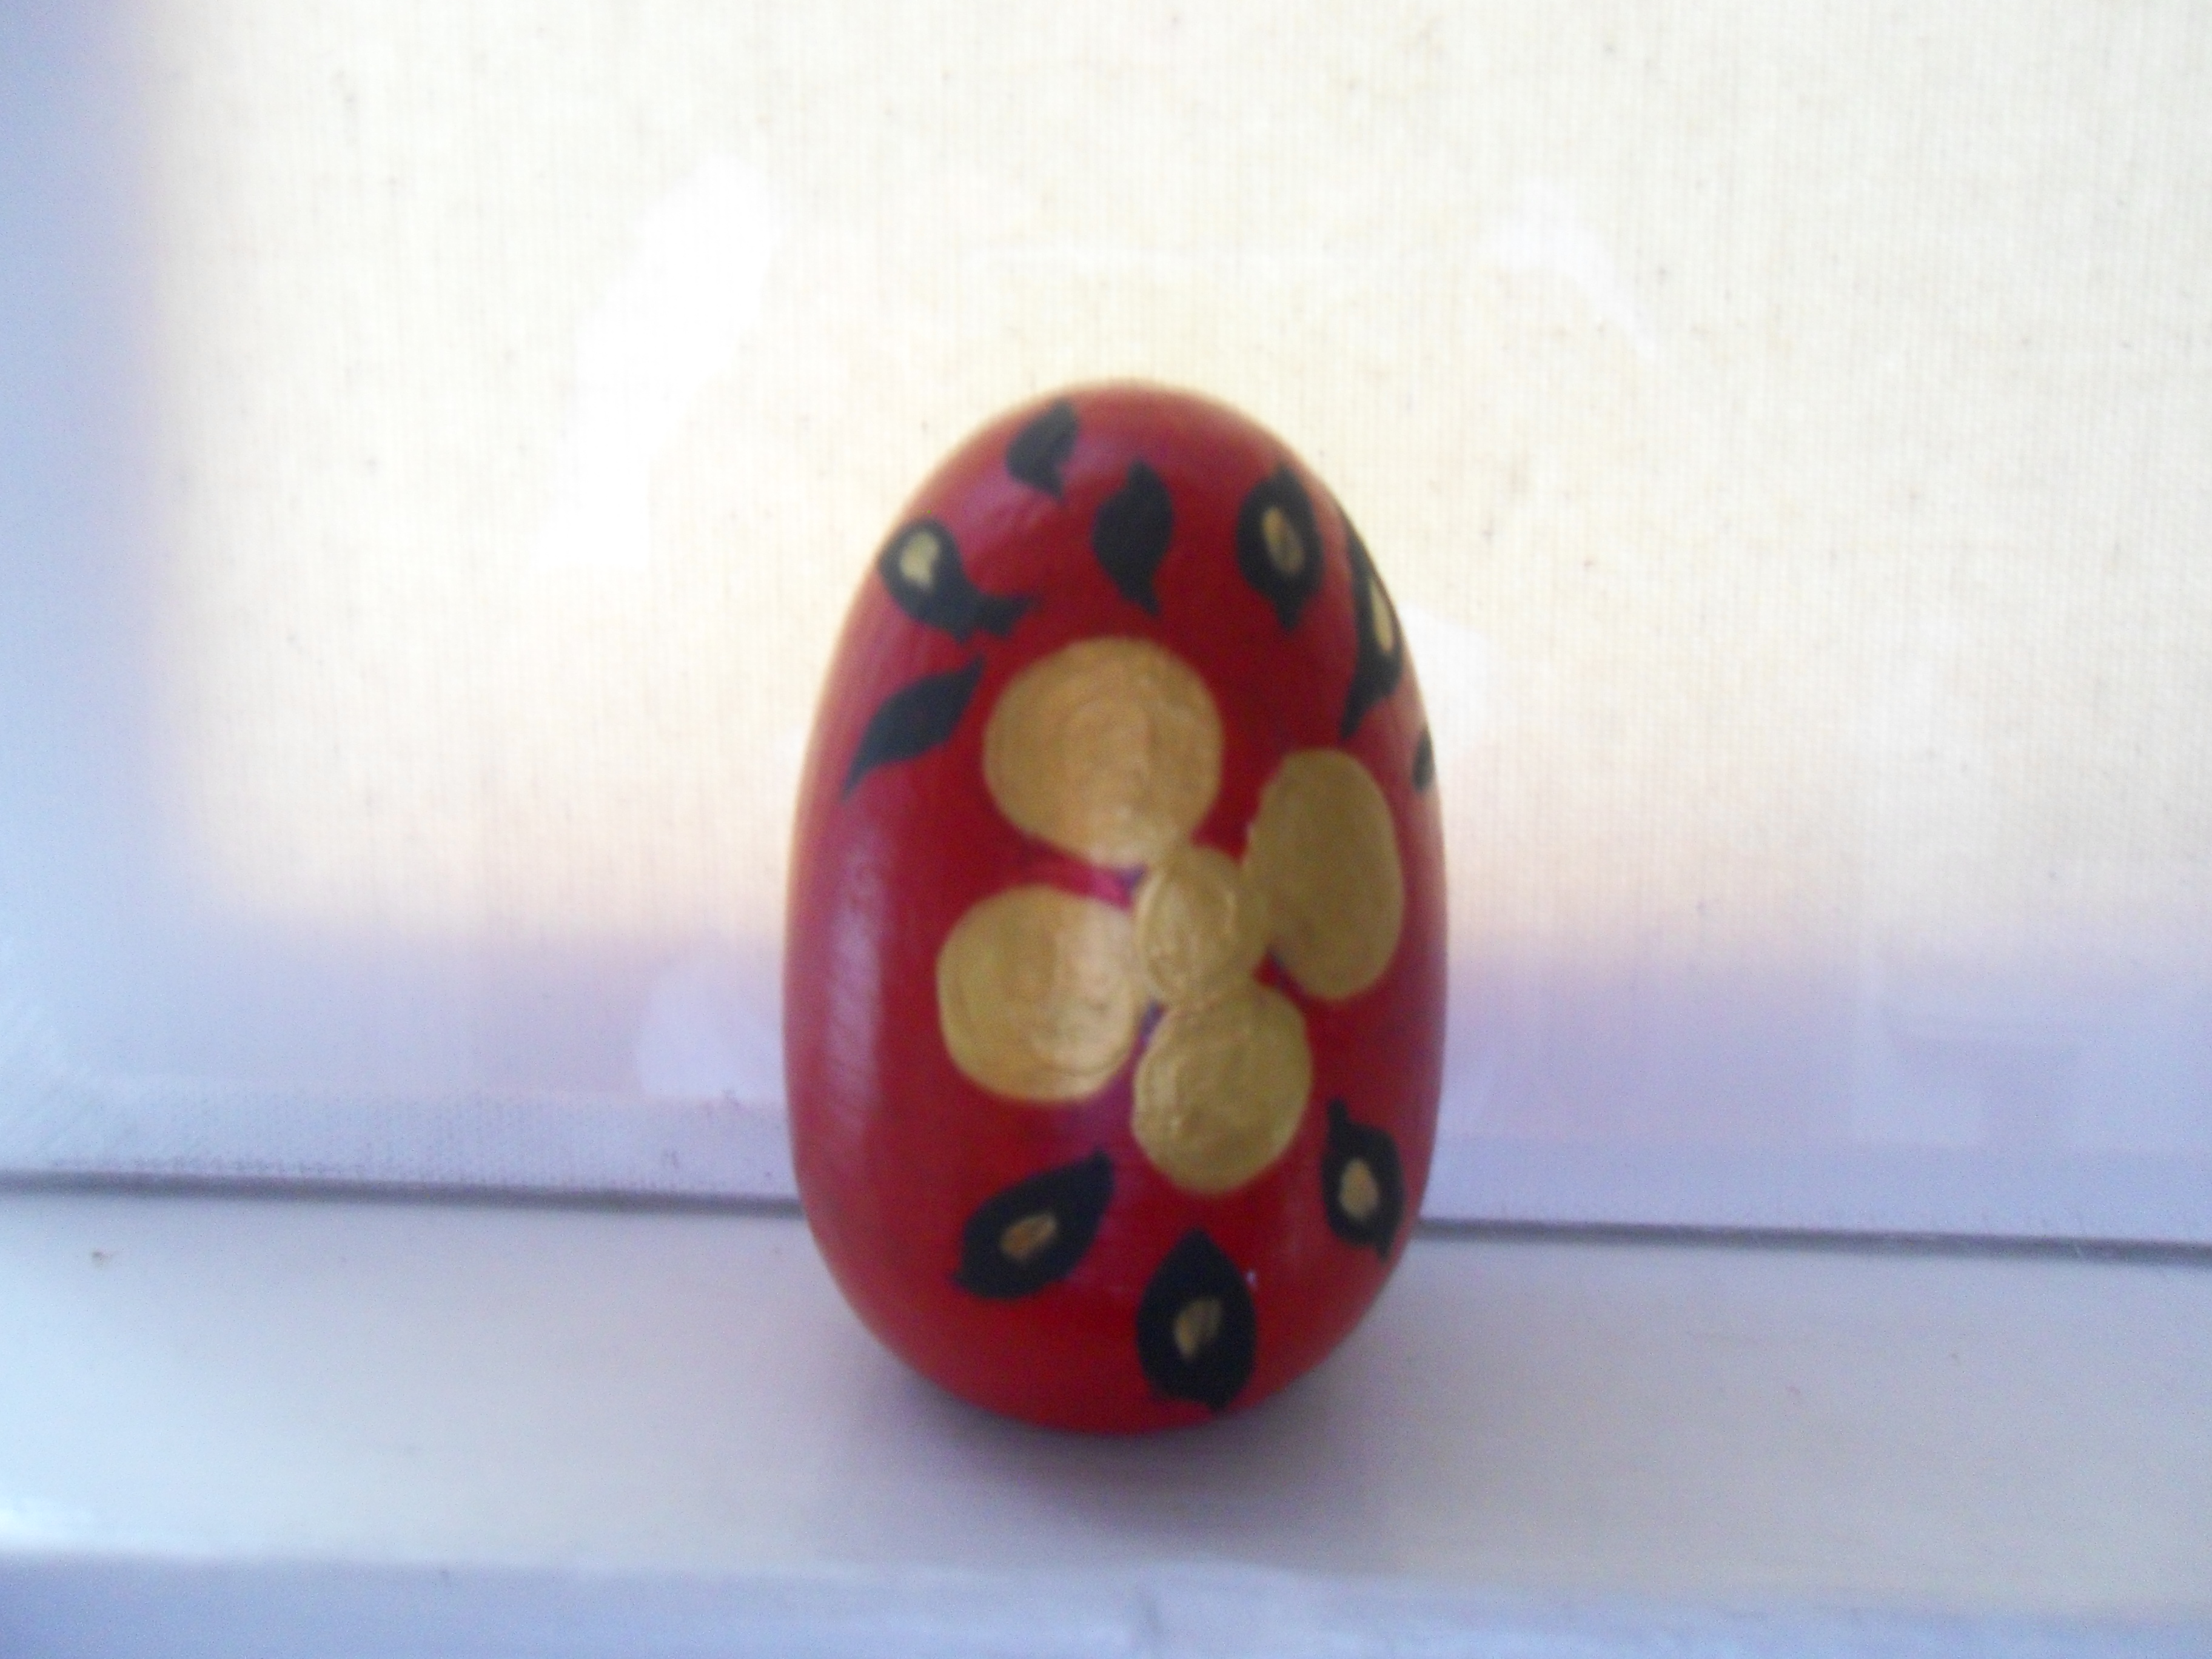 Khokhloma - Decorated egg